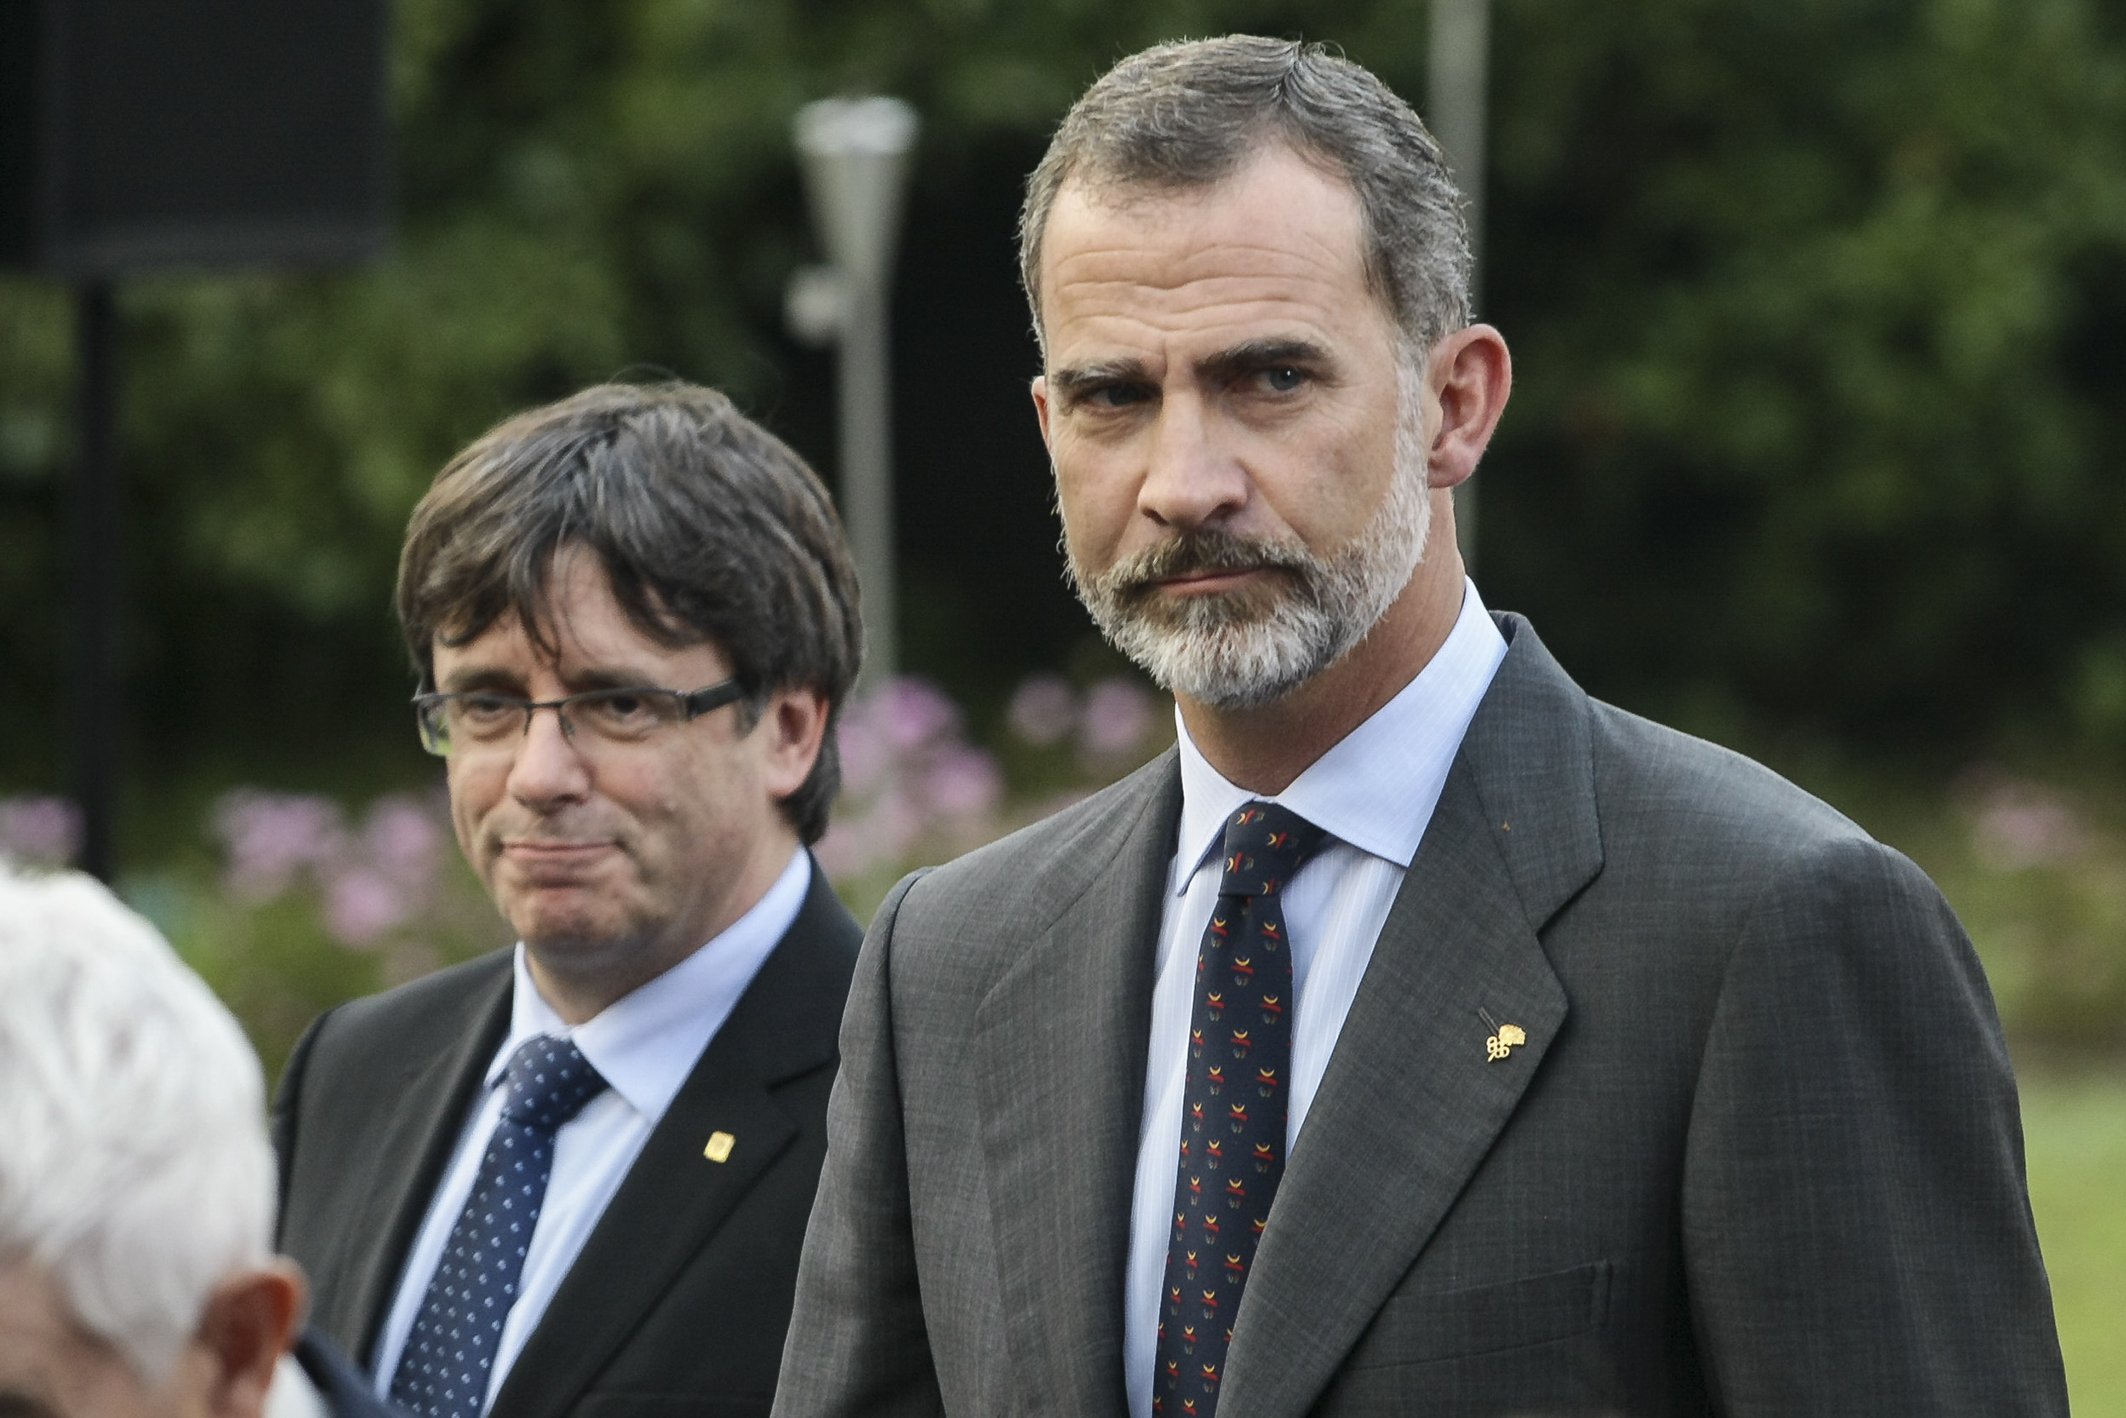 El reproche de Puigdemont al Rey: "No lo olvidaremos nunca"